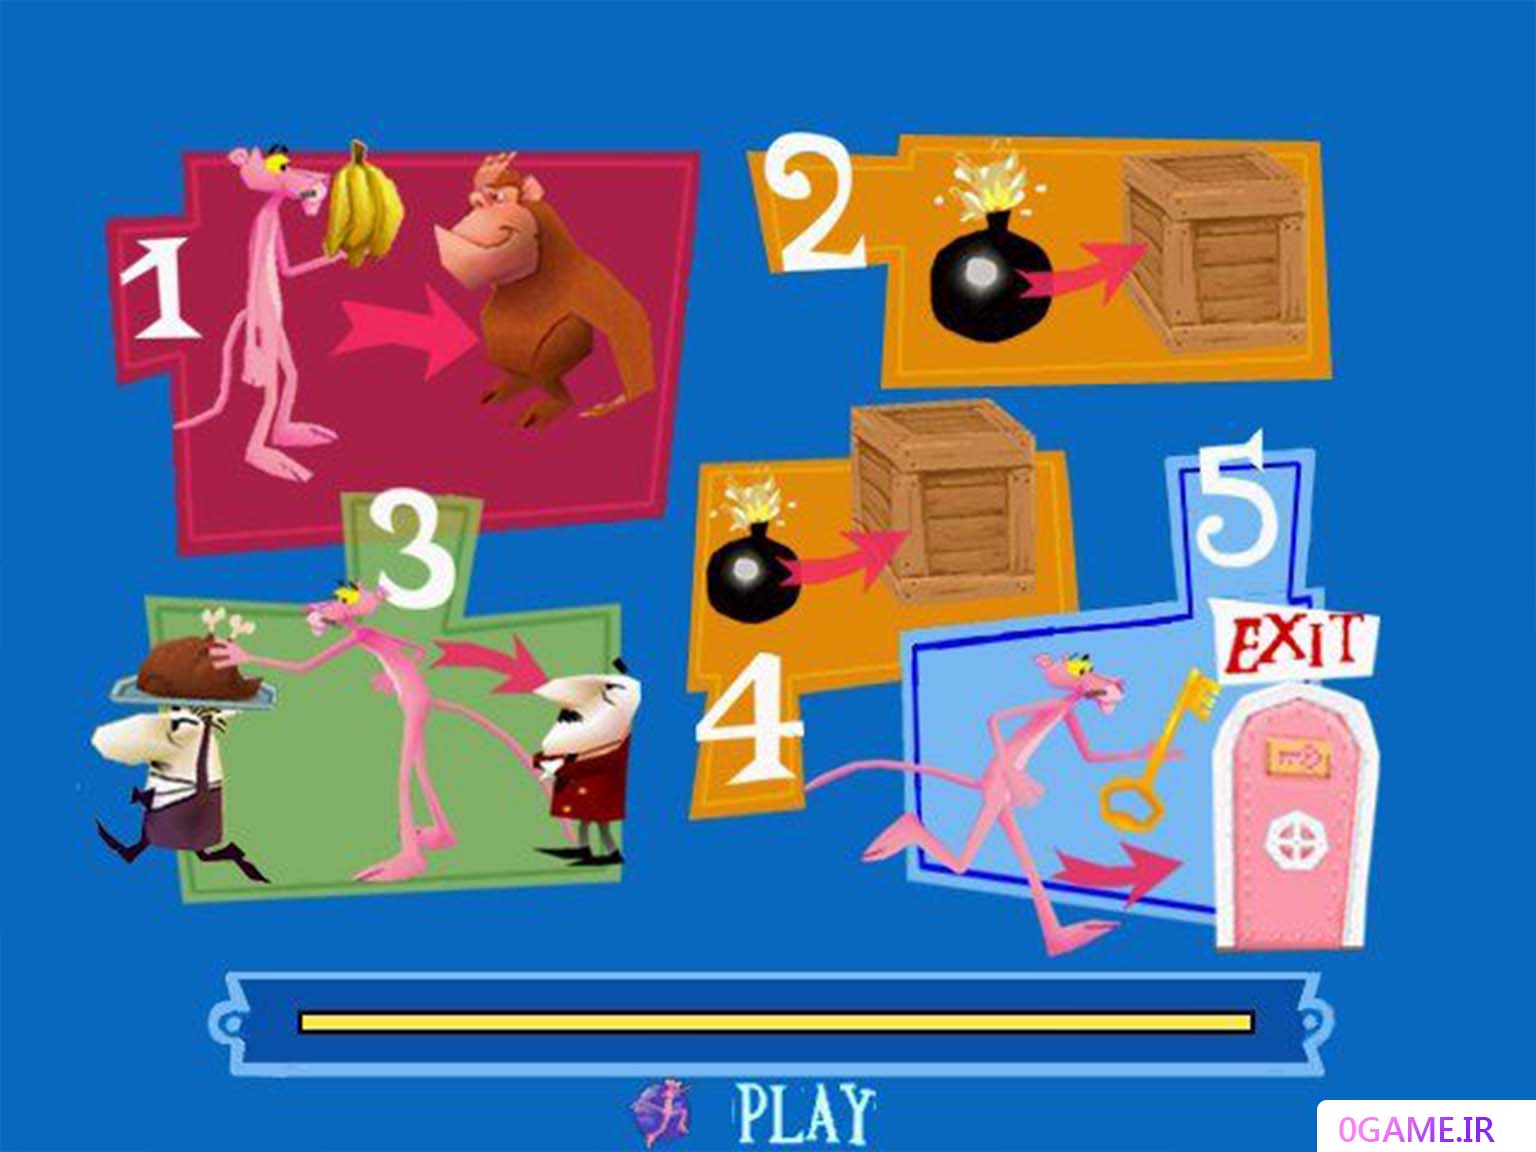 دانلود بازی پلنگ صورتی (Pink Panther) نسخه کامل برای کامپیوتر